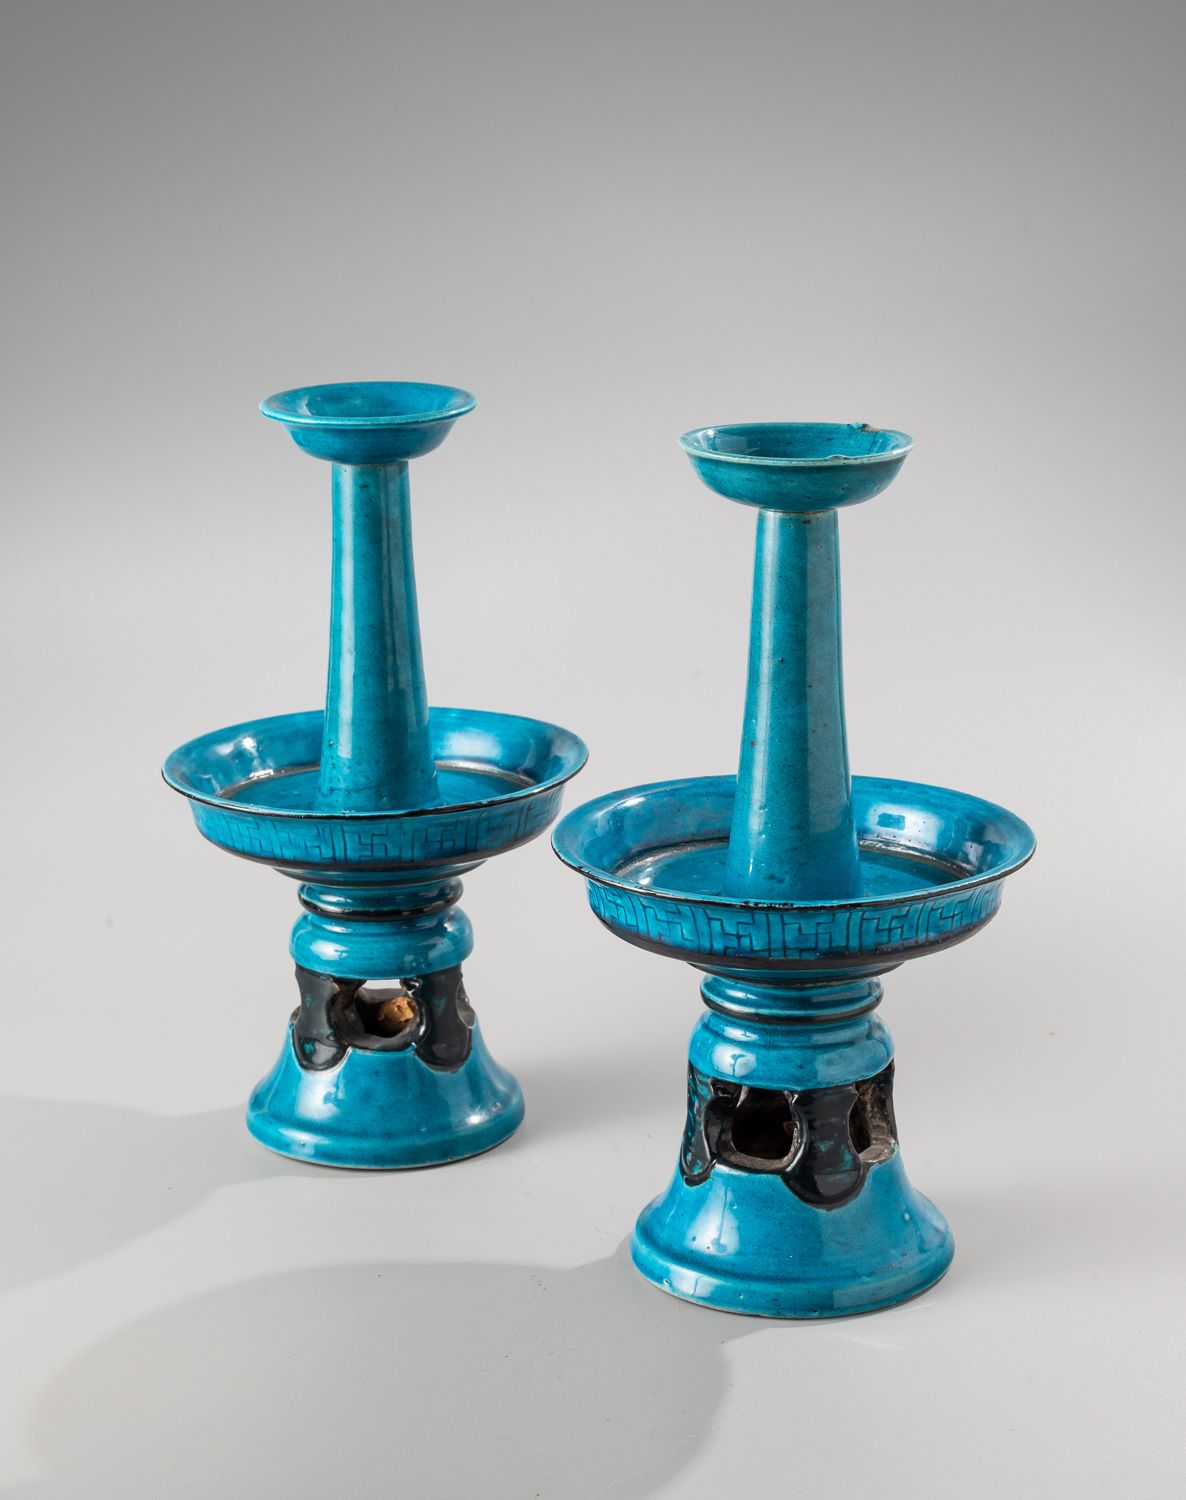 Null CHINA, siglo XVIII

Un par de candelabros de cerámica esmaltada de color tu&hellip;